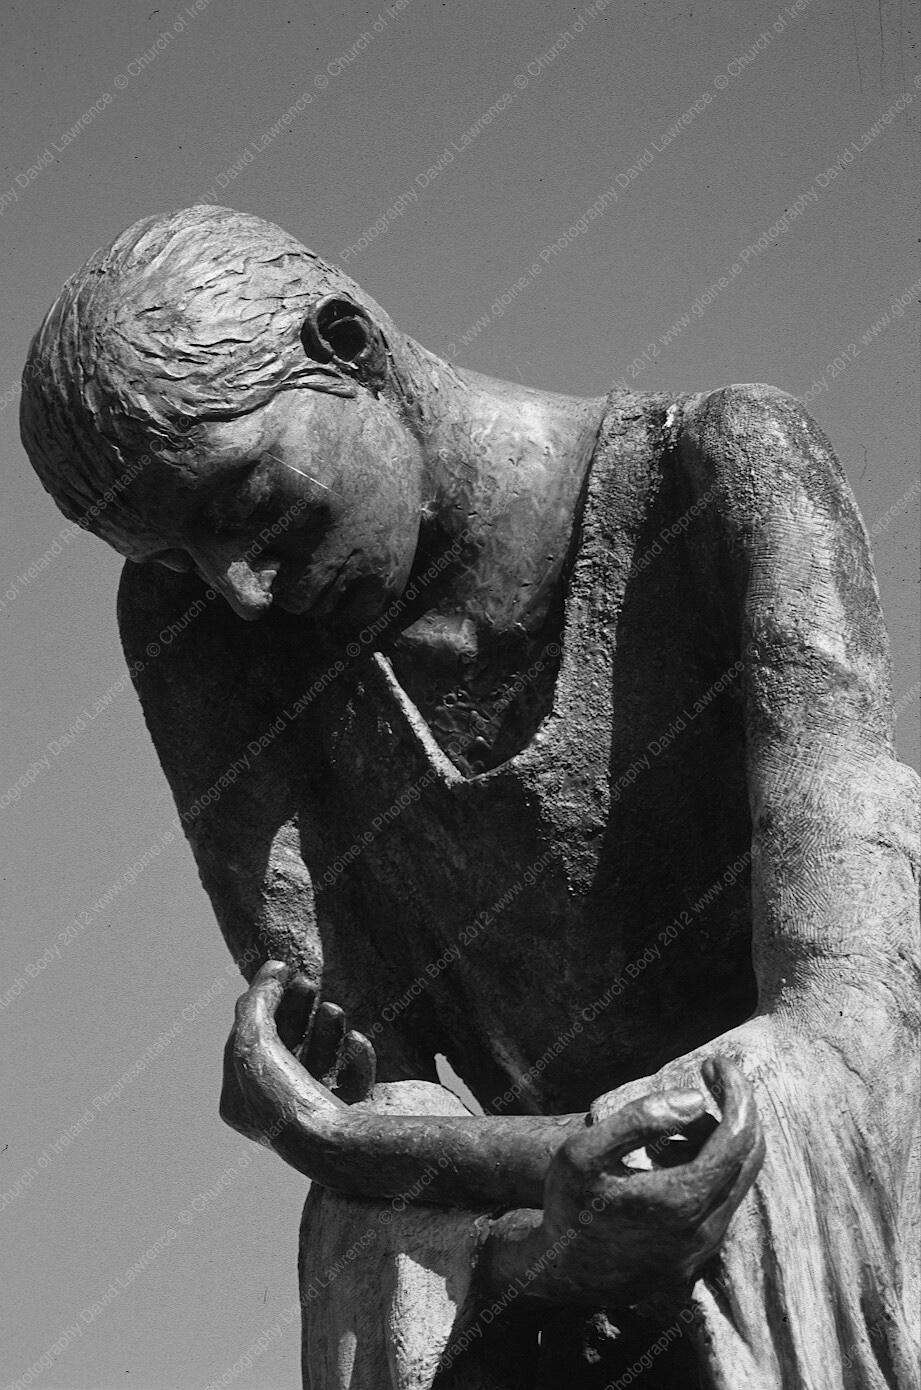 C003 - Famine sculpture